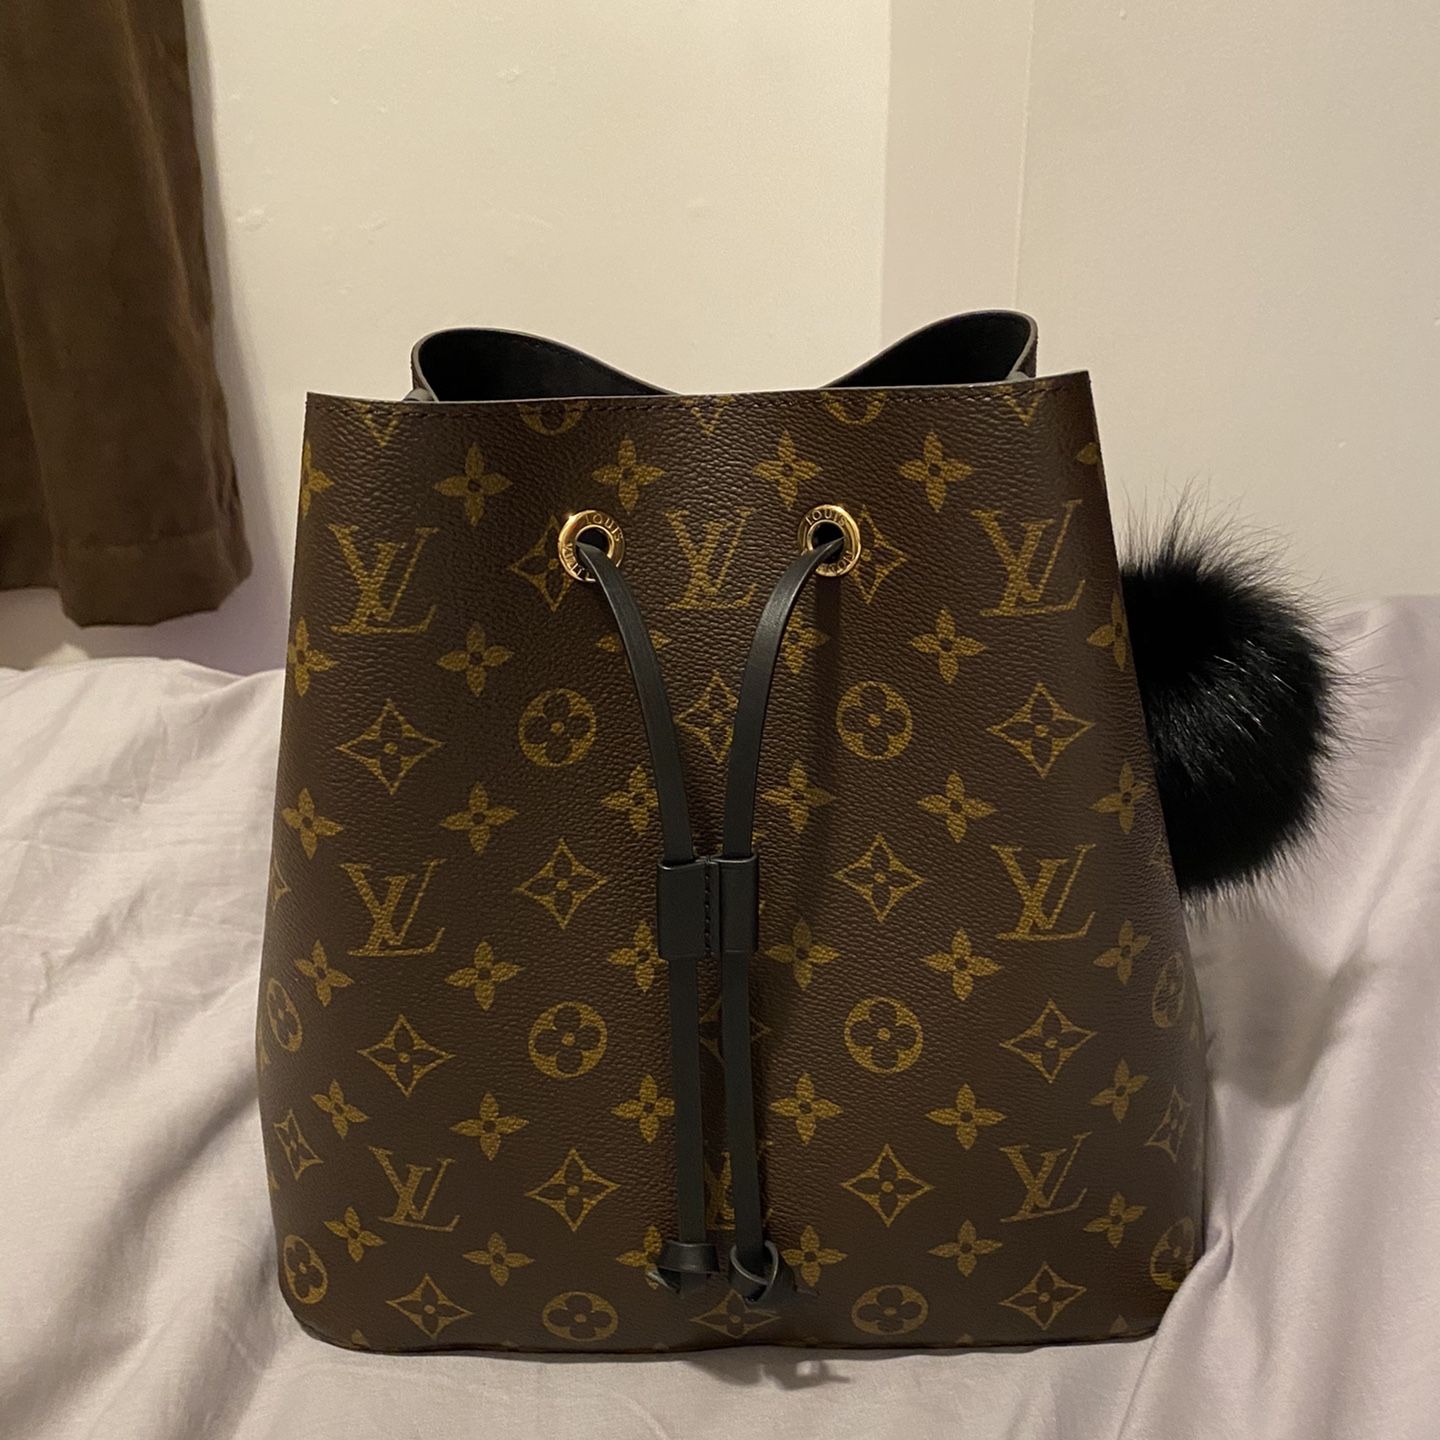 Authentic Louis Vuitton Neonoe MM Bag